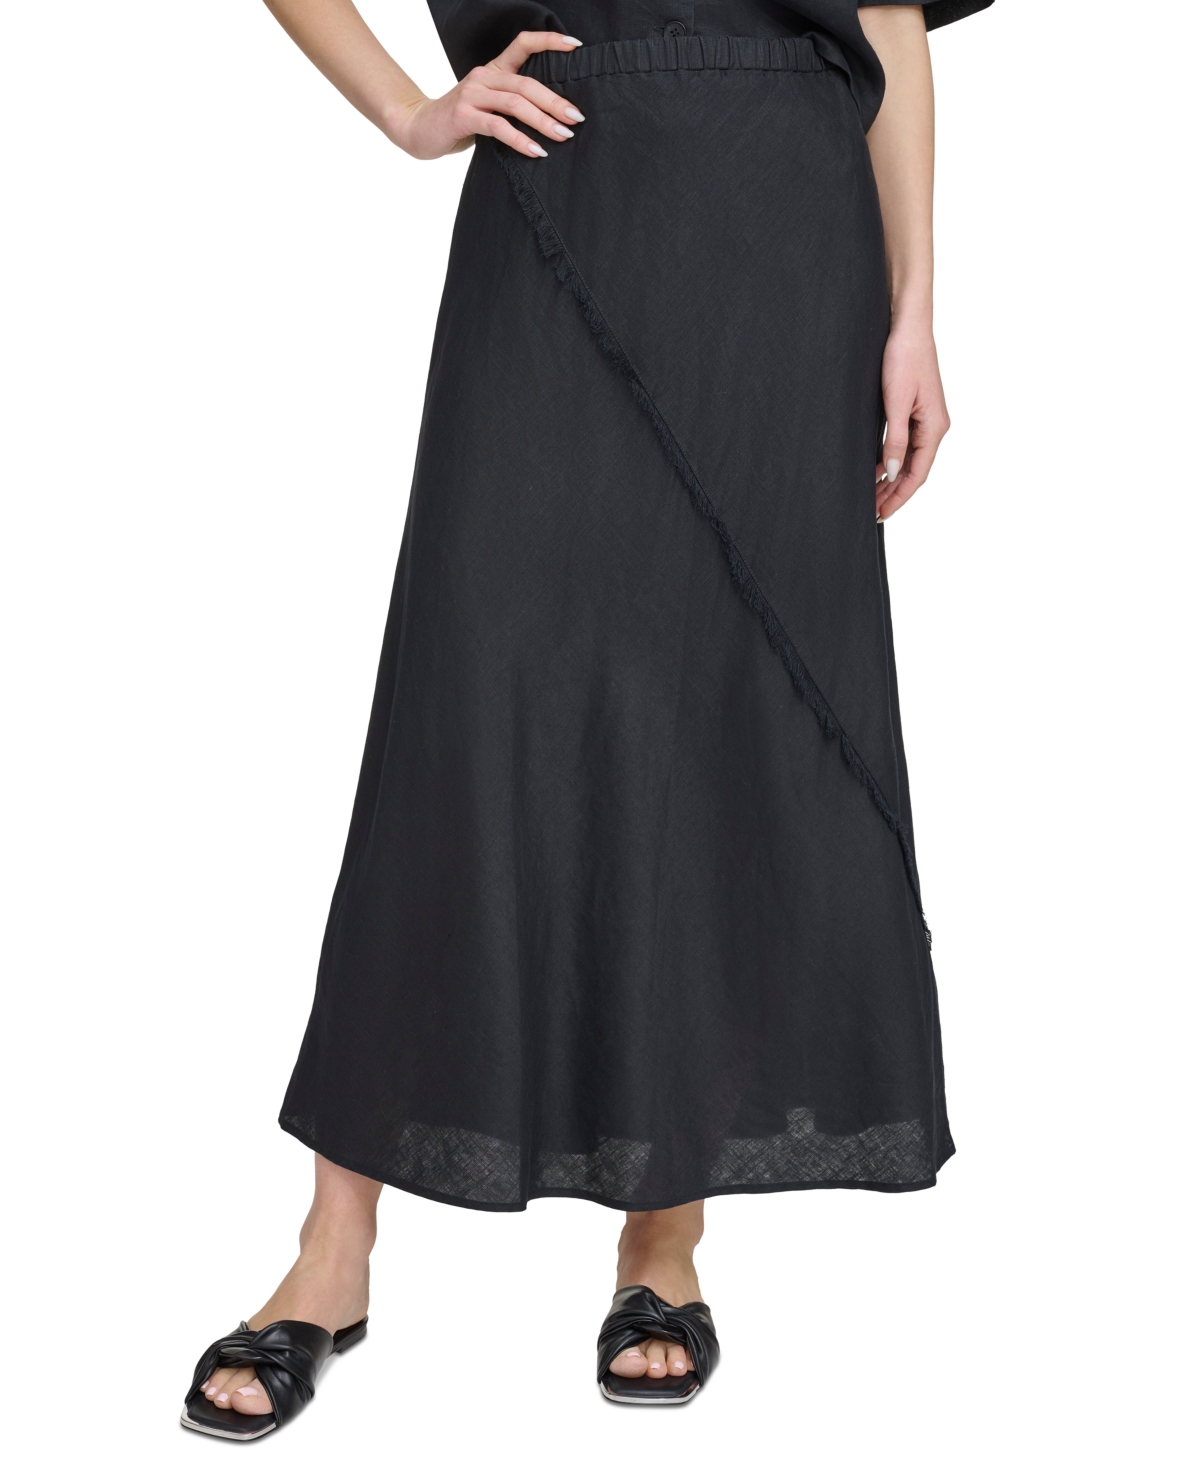 Women's Pull-On Fringe-Trim Linen Skirt - Black